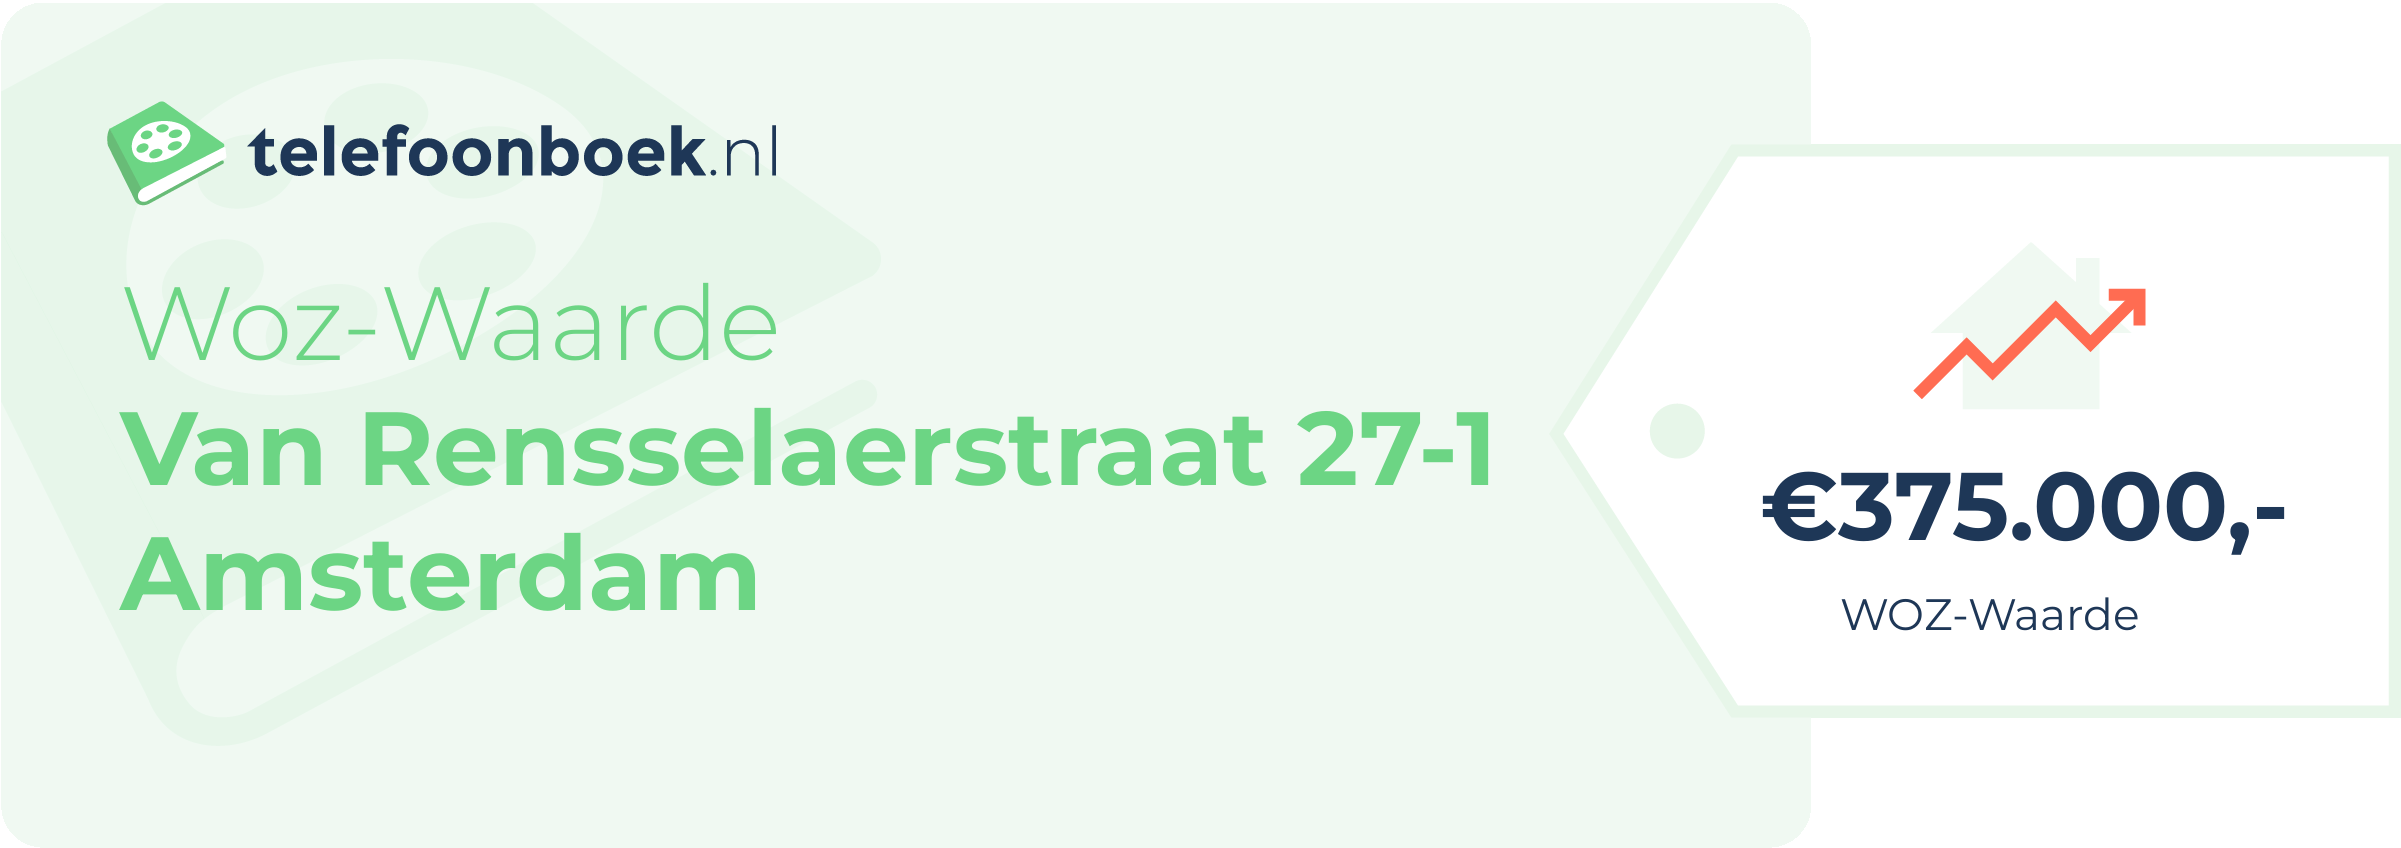 WOZ-waarde Van Rensselaerstraat 27-1 Amsterdam